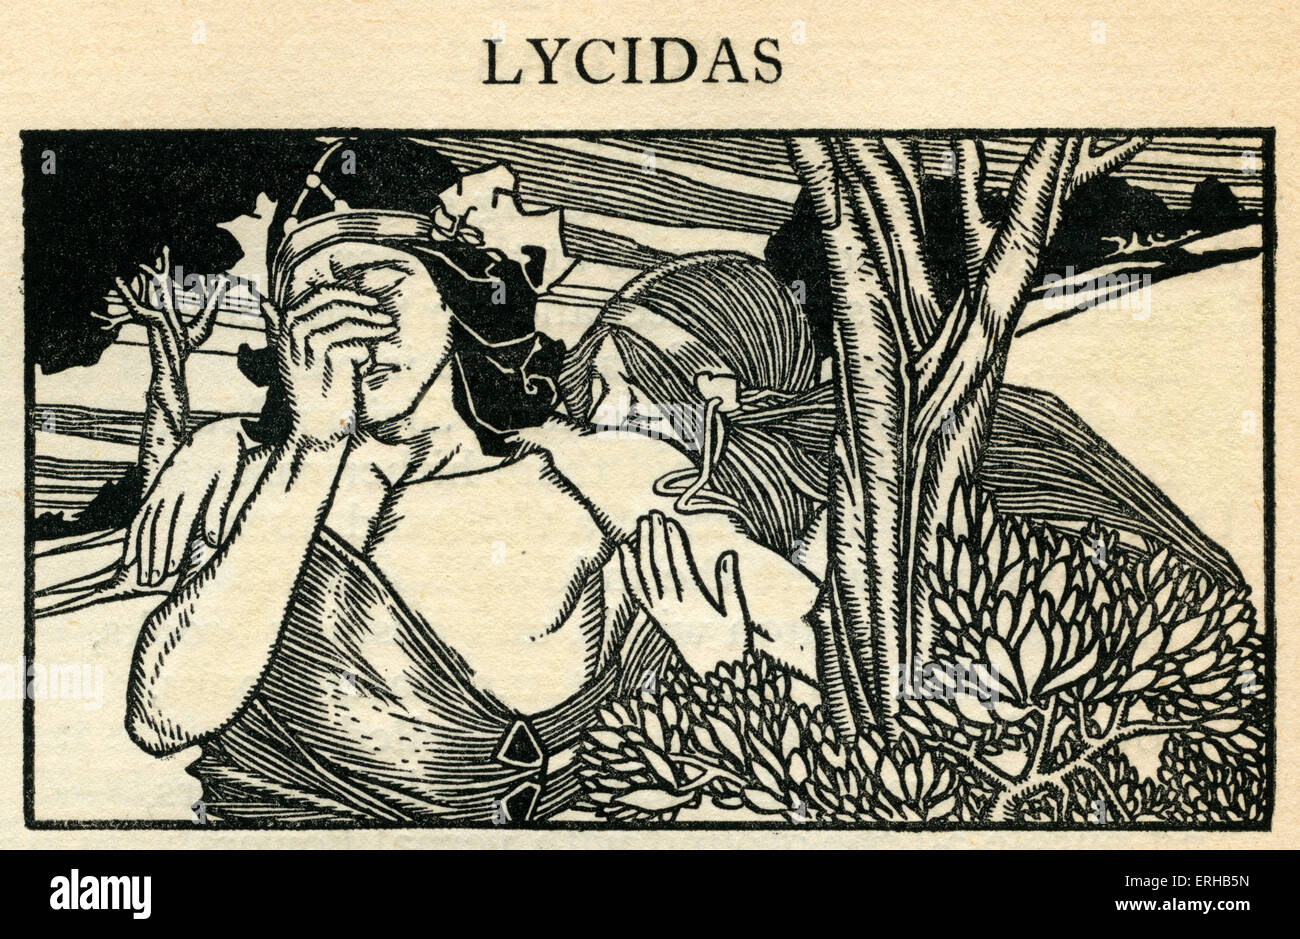 Lycidas da John Milton (1608-1674).Lycidas è una elegia pastorale pubblicata con Milton's 1638 poesie, dedicata alla memoria di Foto Stock